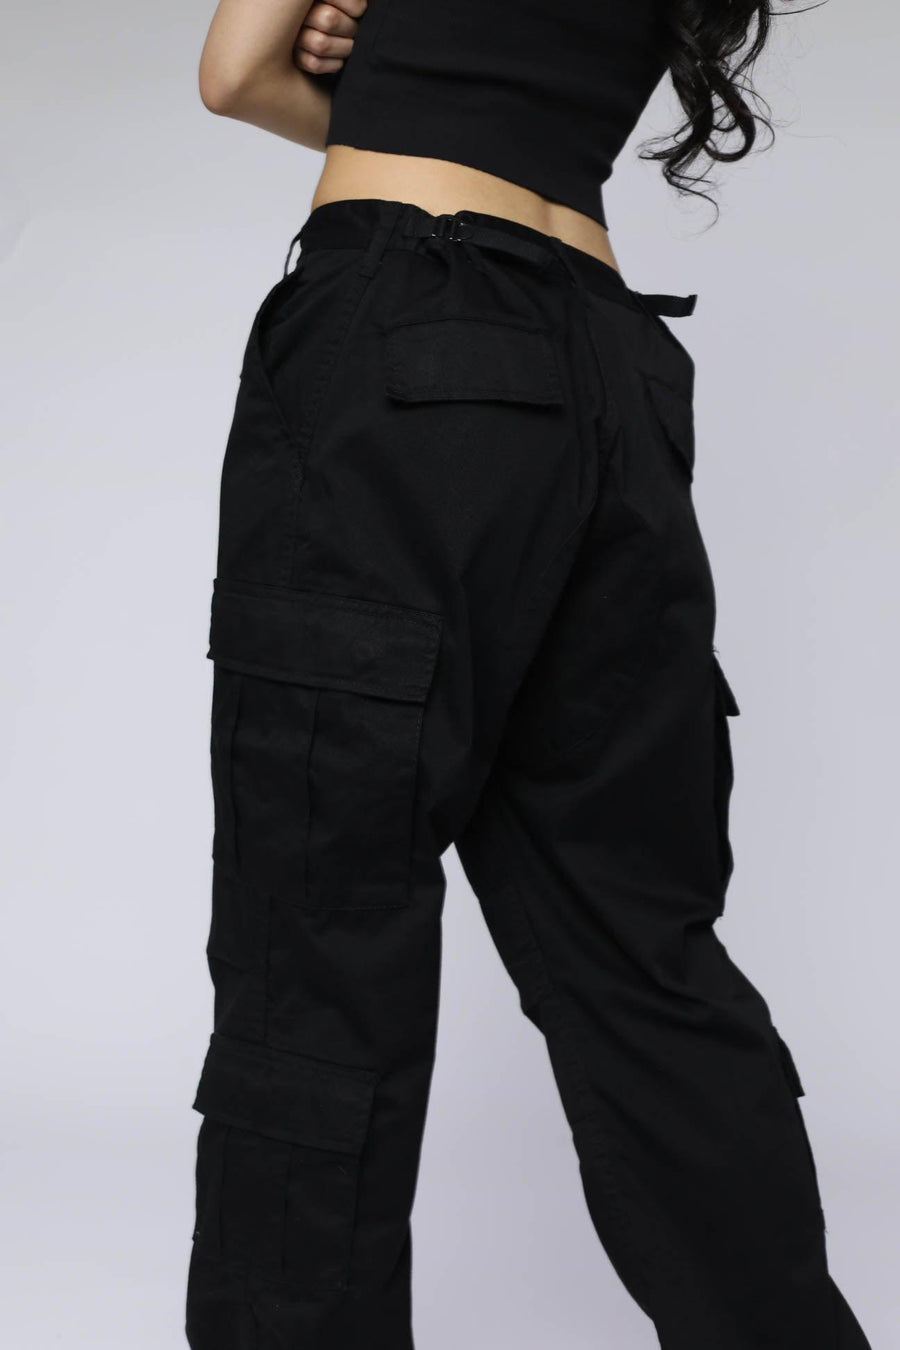 Black BDU Pants - L, 2XL